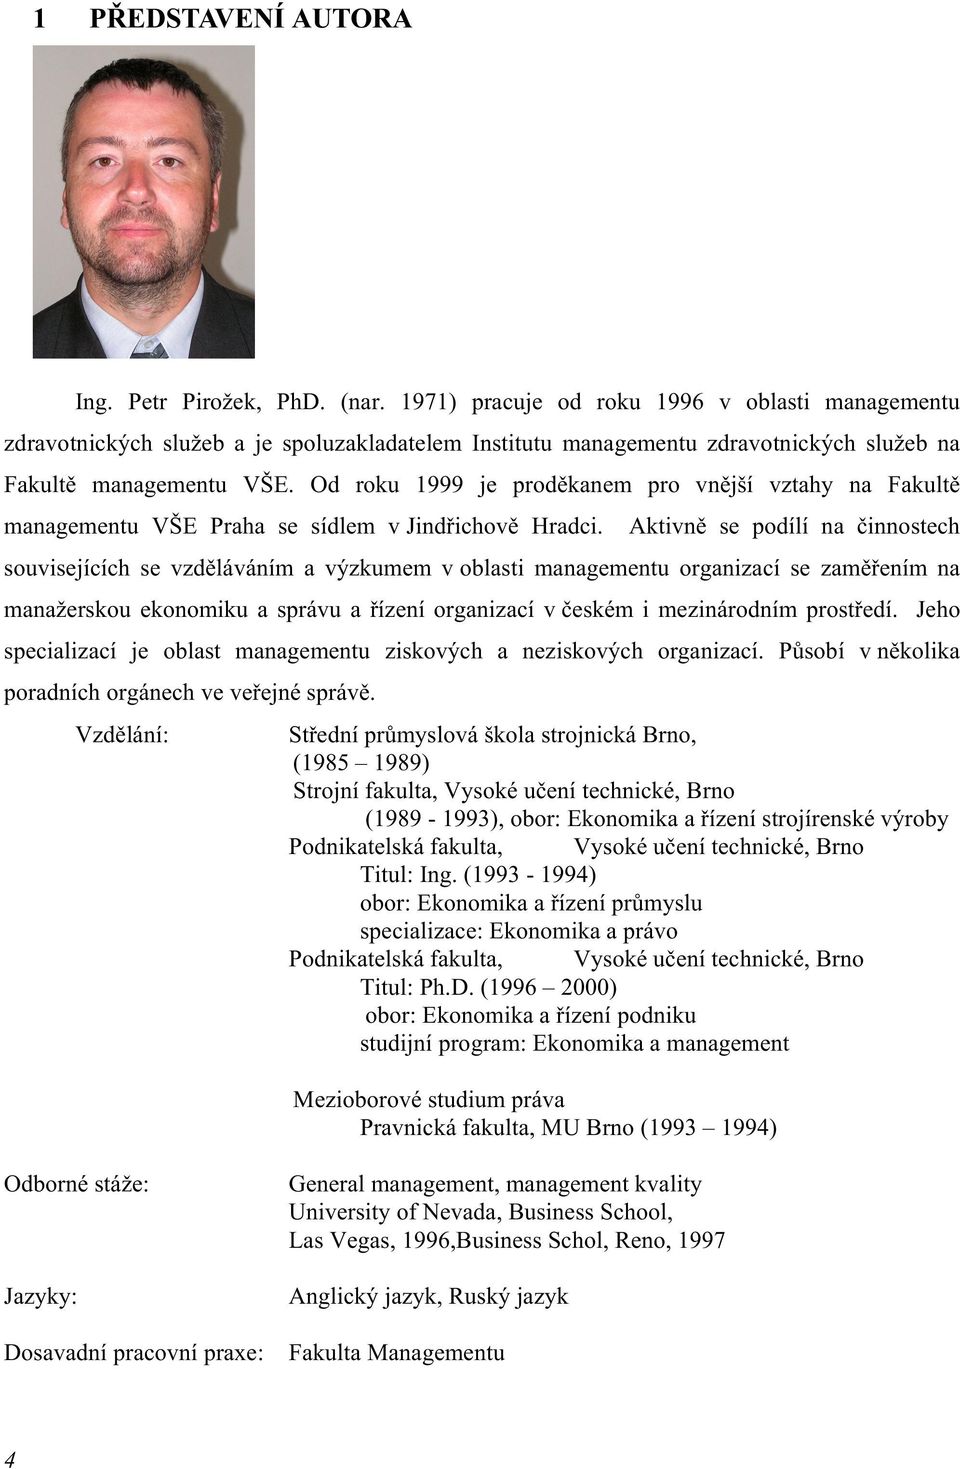 Od roku 1999 je proděkanem pro vnější vztahy na Fakultě managementu VŠE Praha se sídlem v Jindřichově Hradci.